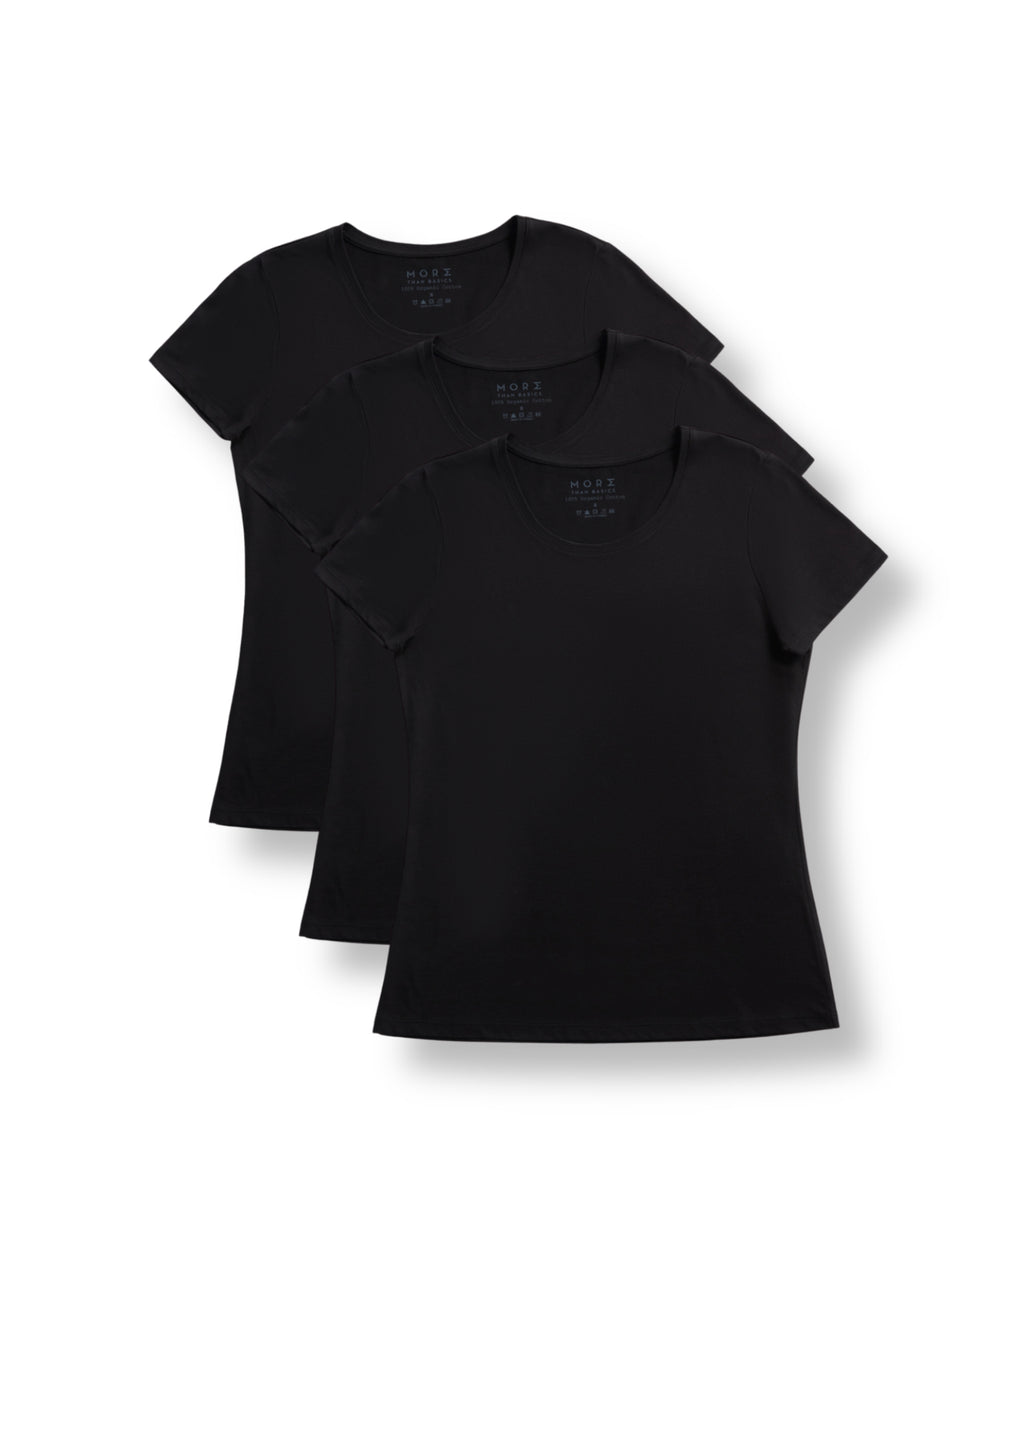 Women's TENCEL Modal Short-Sleeve Basic T-shirt 3-Pack